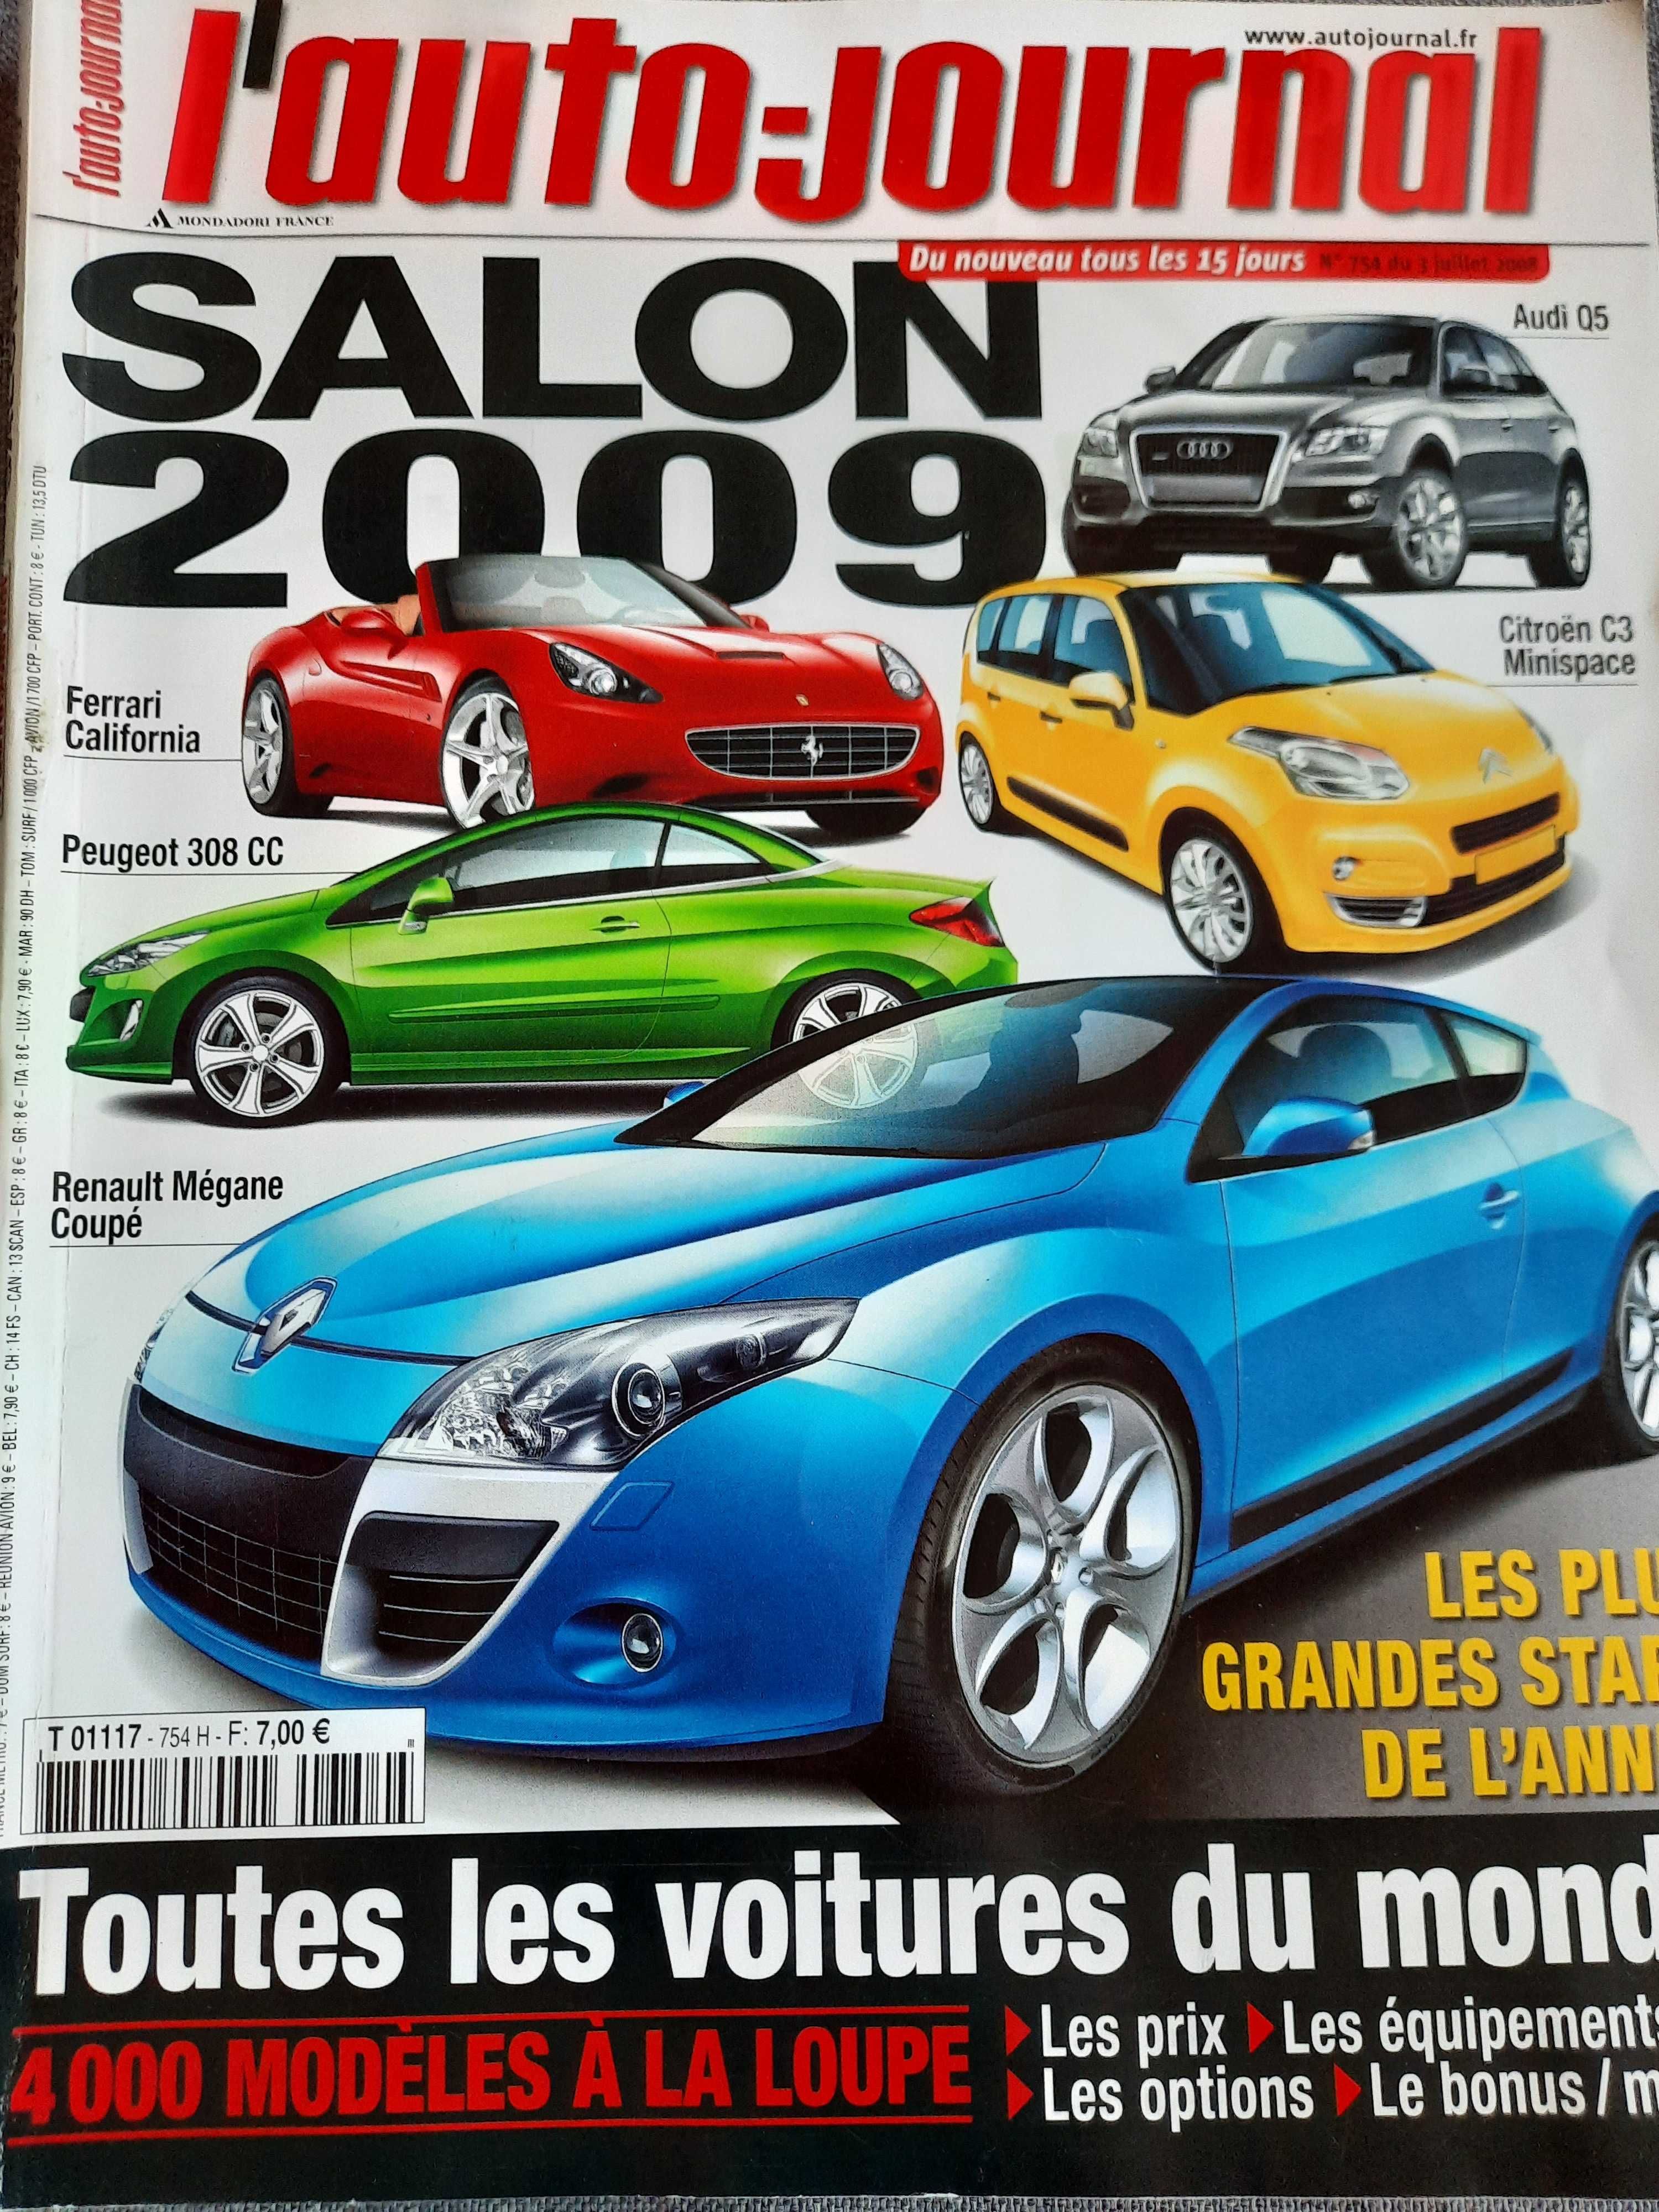 L'auto - journal Salon 2009